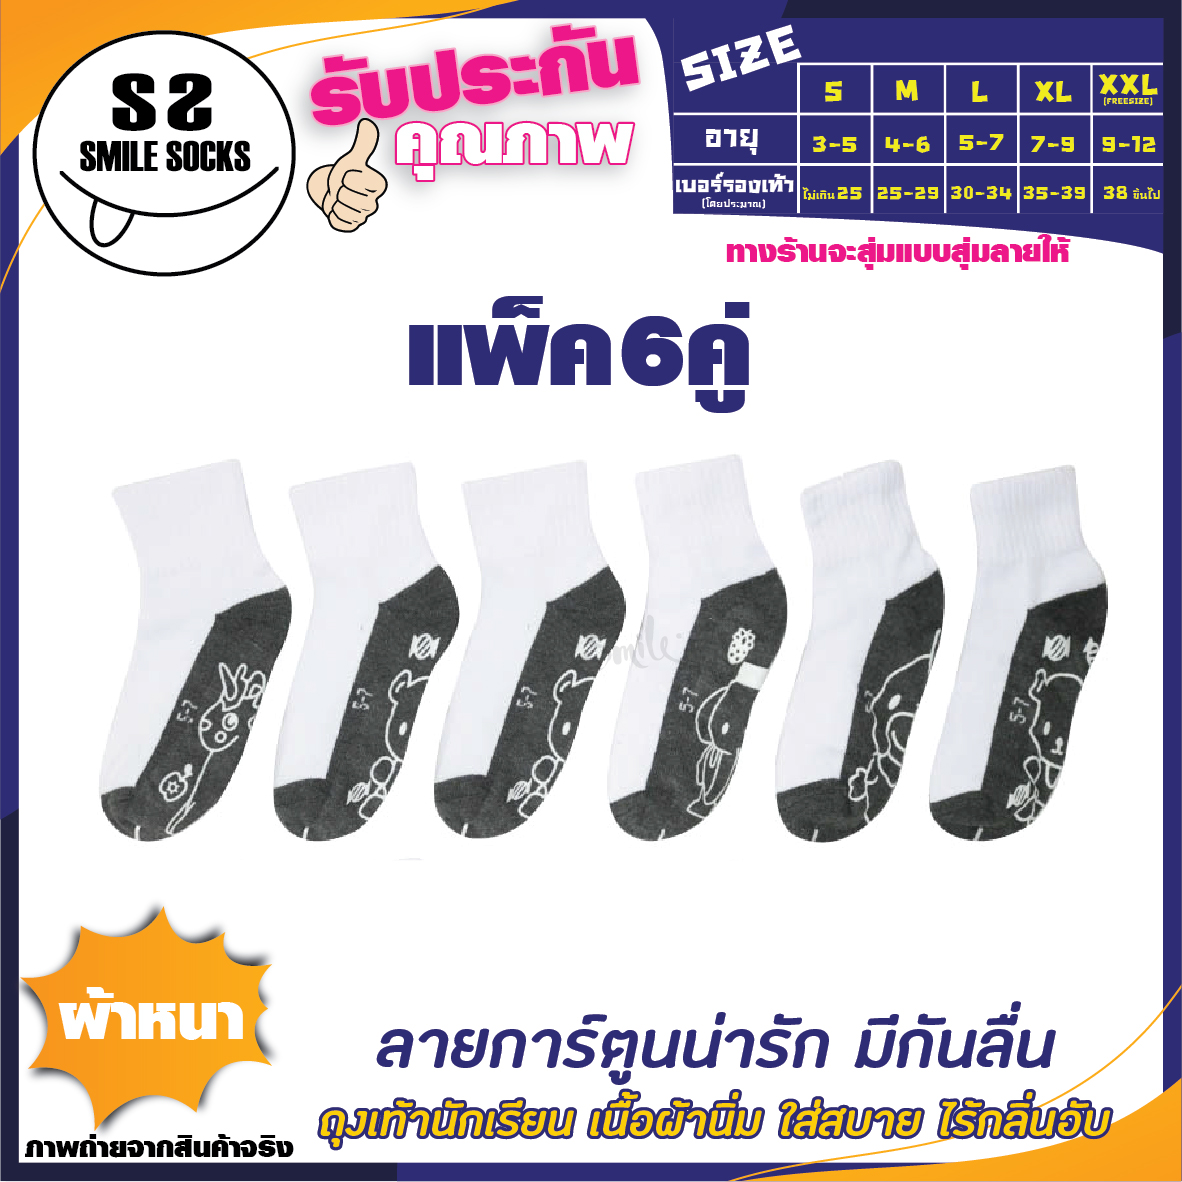 😱ถุงเท้านักเรียนข้อสั้น (Thai student socks) สีขาวพื้นเทา พื้นมีกันลื่นมีลายการ์ตูนน่ารัก 🐥🐸ยางกันลื่นอย่างดี เนื้อผ้าหนา (แพ็ค 6คู่ /12คู่)